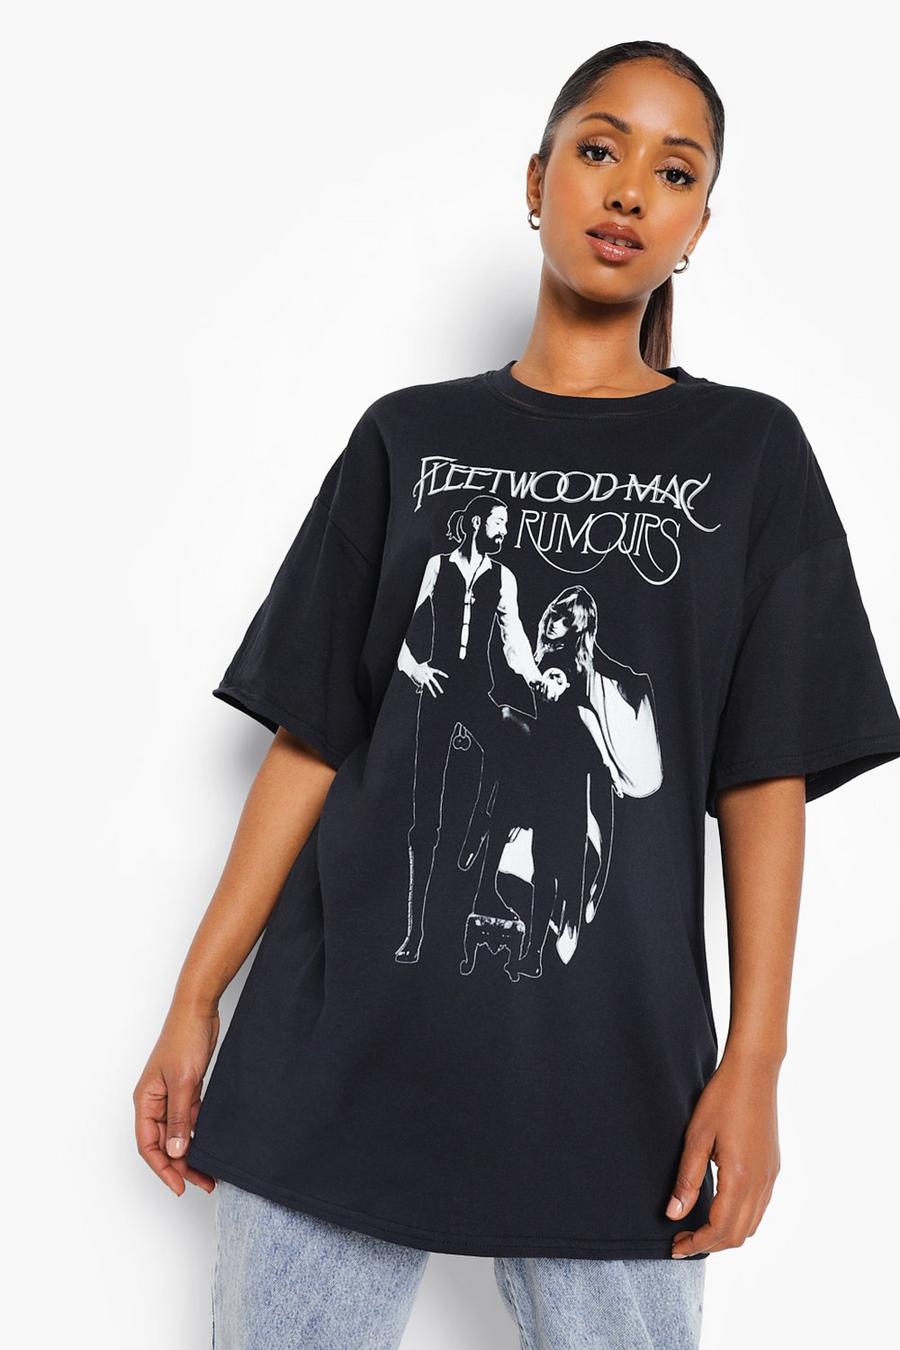 Camiseta Premamá con estampado de Fleetwood Mac, Black image number 1